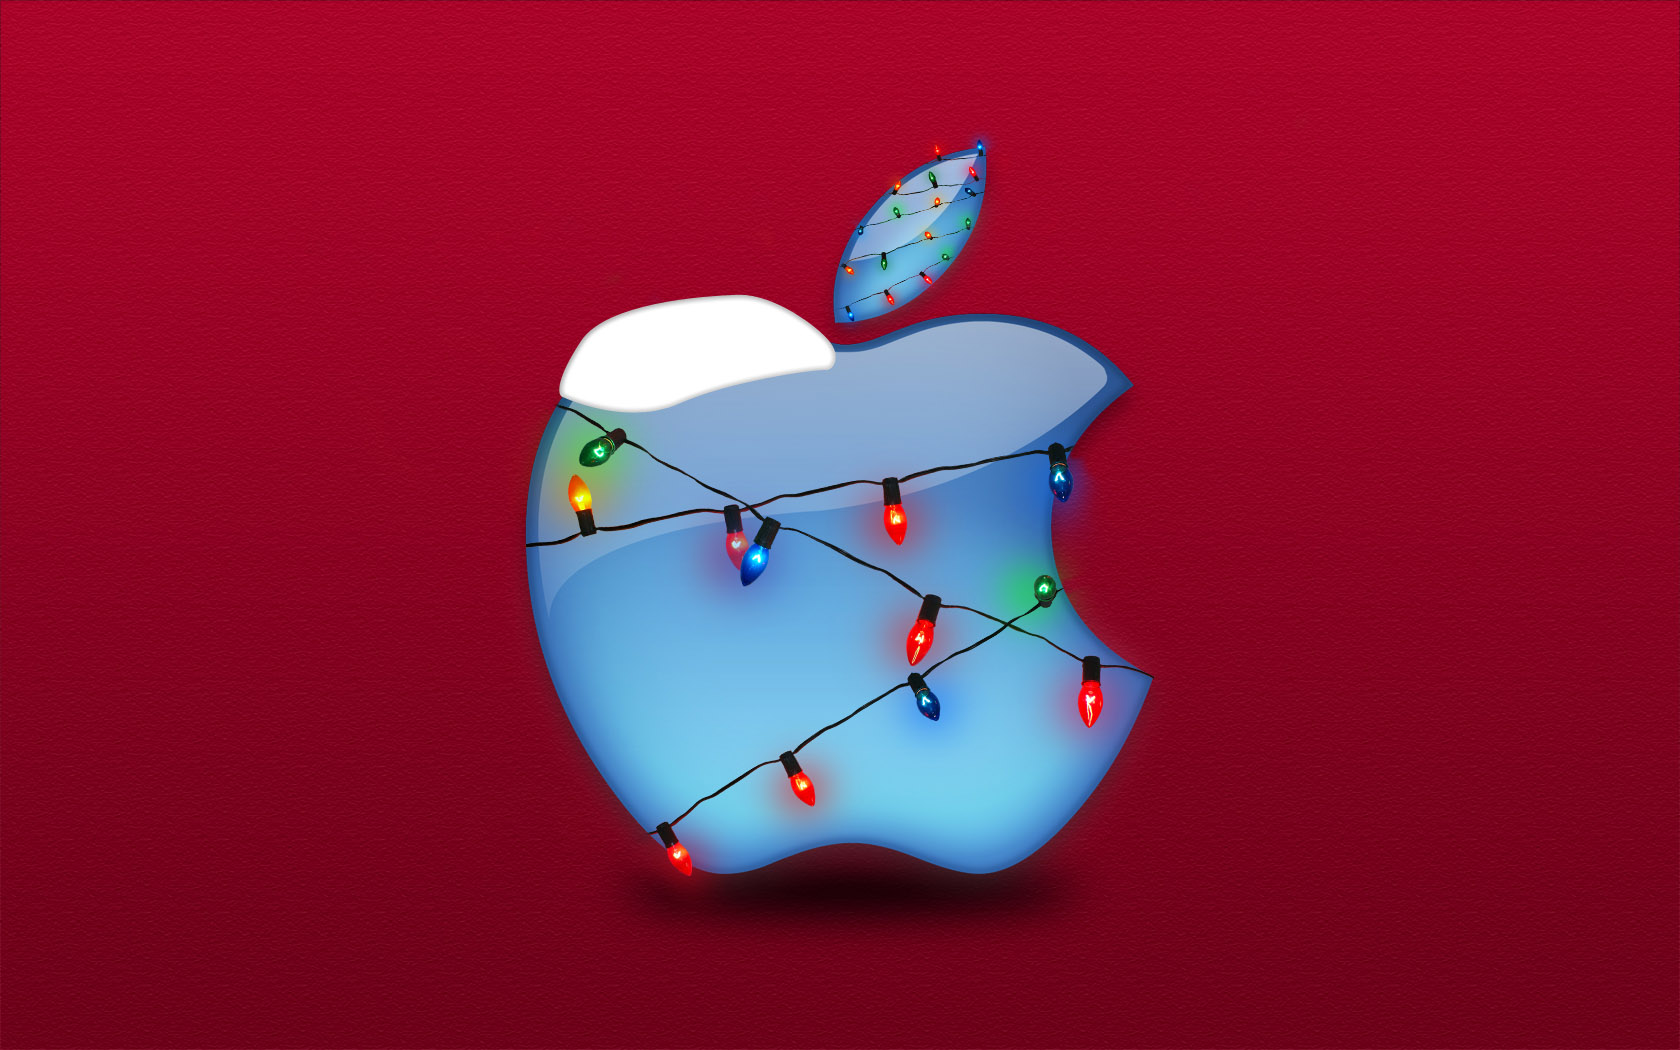 Скачать обои бесплатно Рождество, Праздничные, Apple Inc, Рождественские Огни картинка на рабочий стол ПК